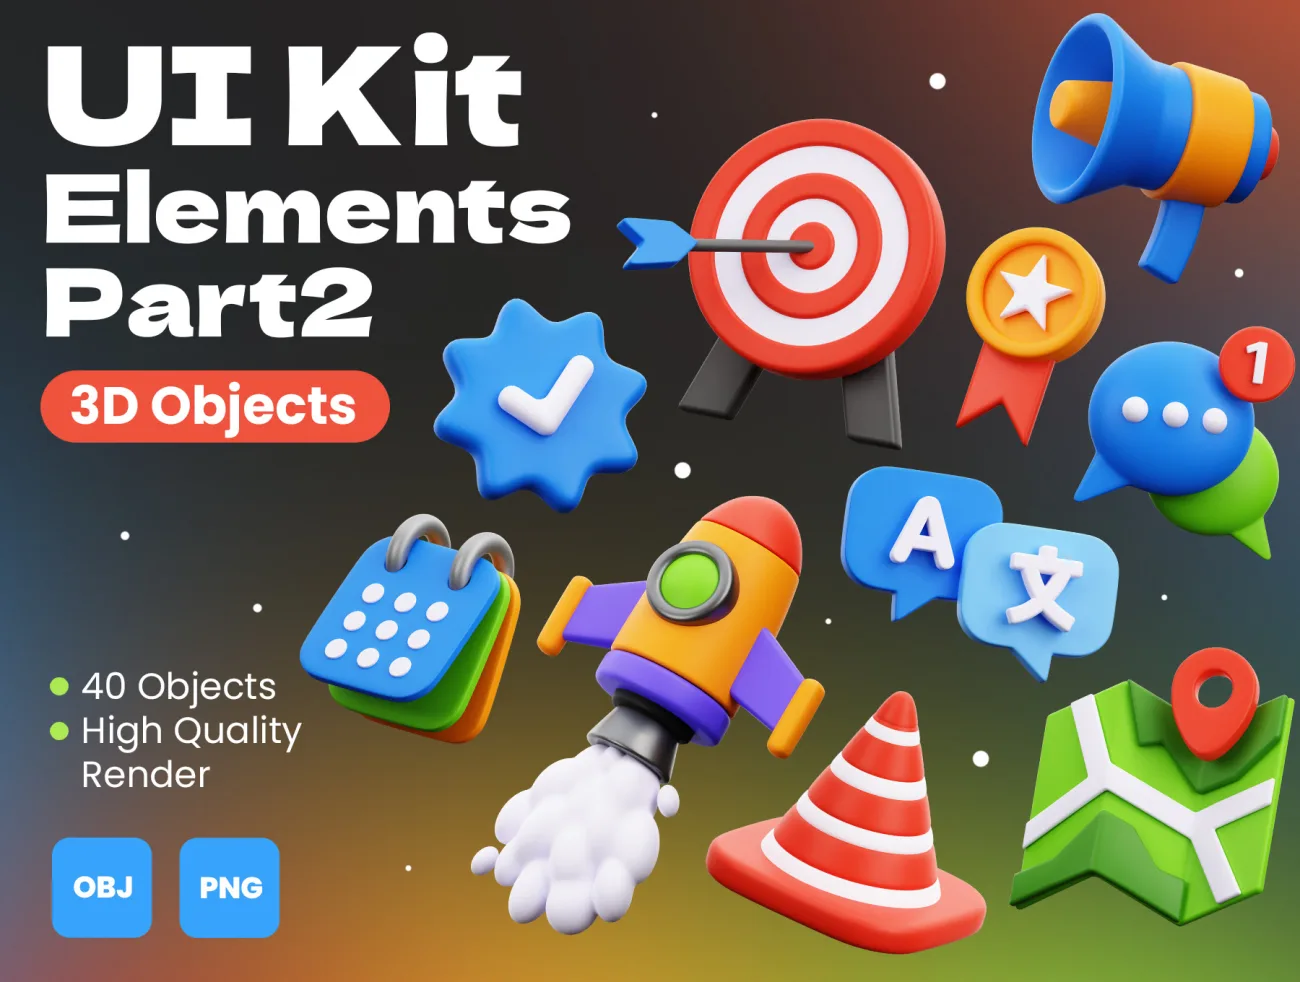 40款3D常用元素UI图标第2部分 3D UI Kit Elements Part 2 blender格式-3D/图标-到位啦UI